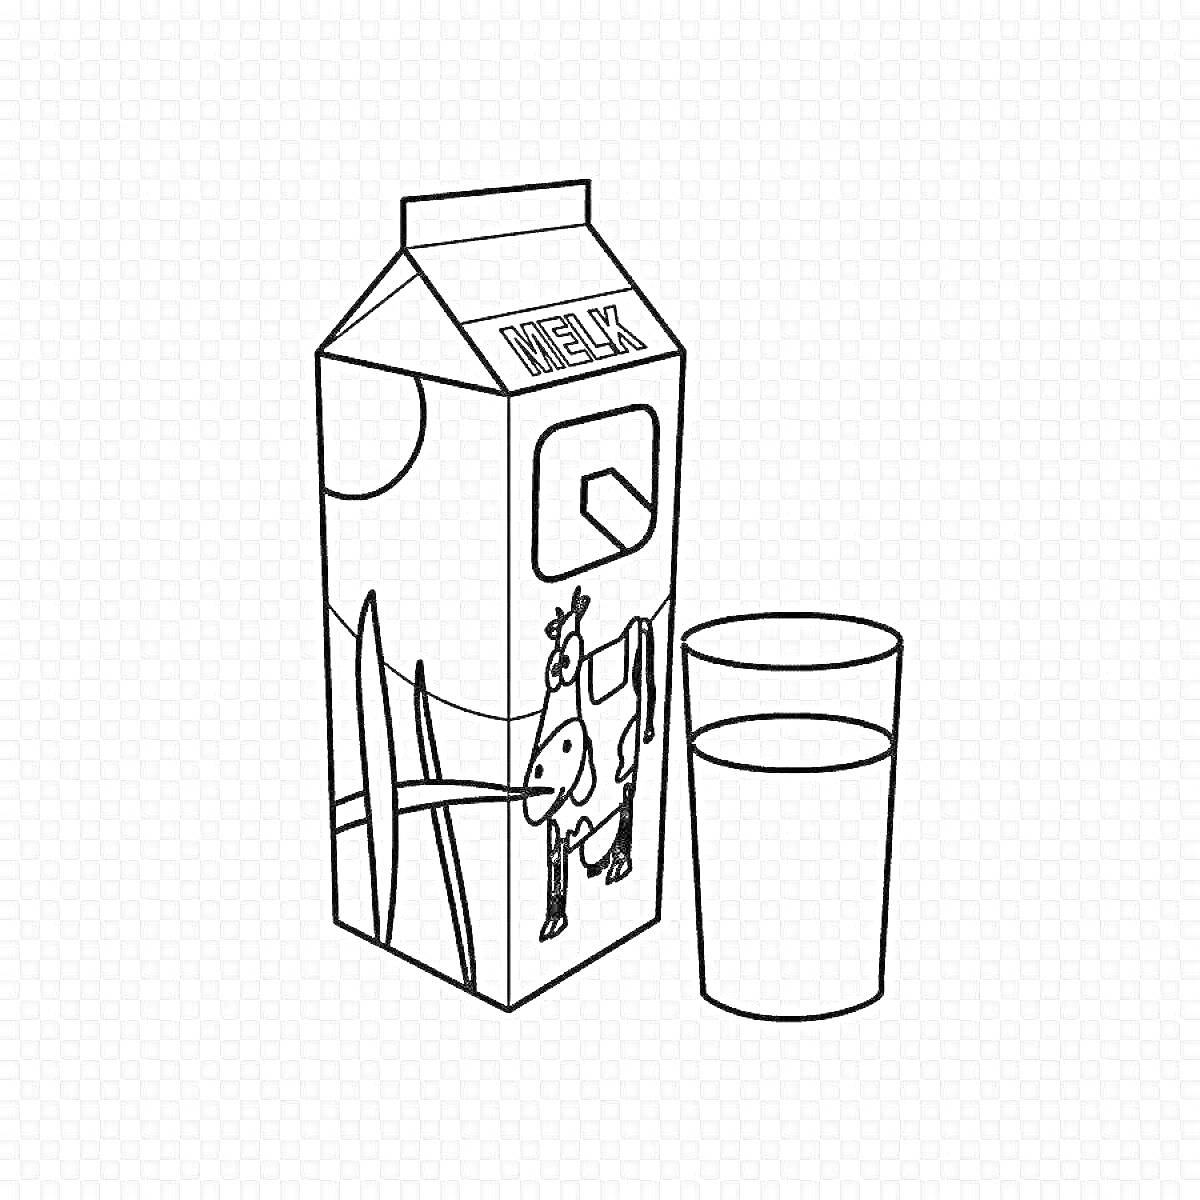 Раскраска Упаковка молока с изображением коровы и стакан с молоком